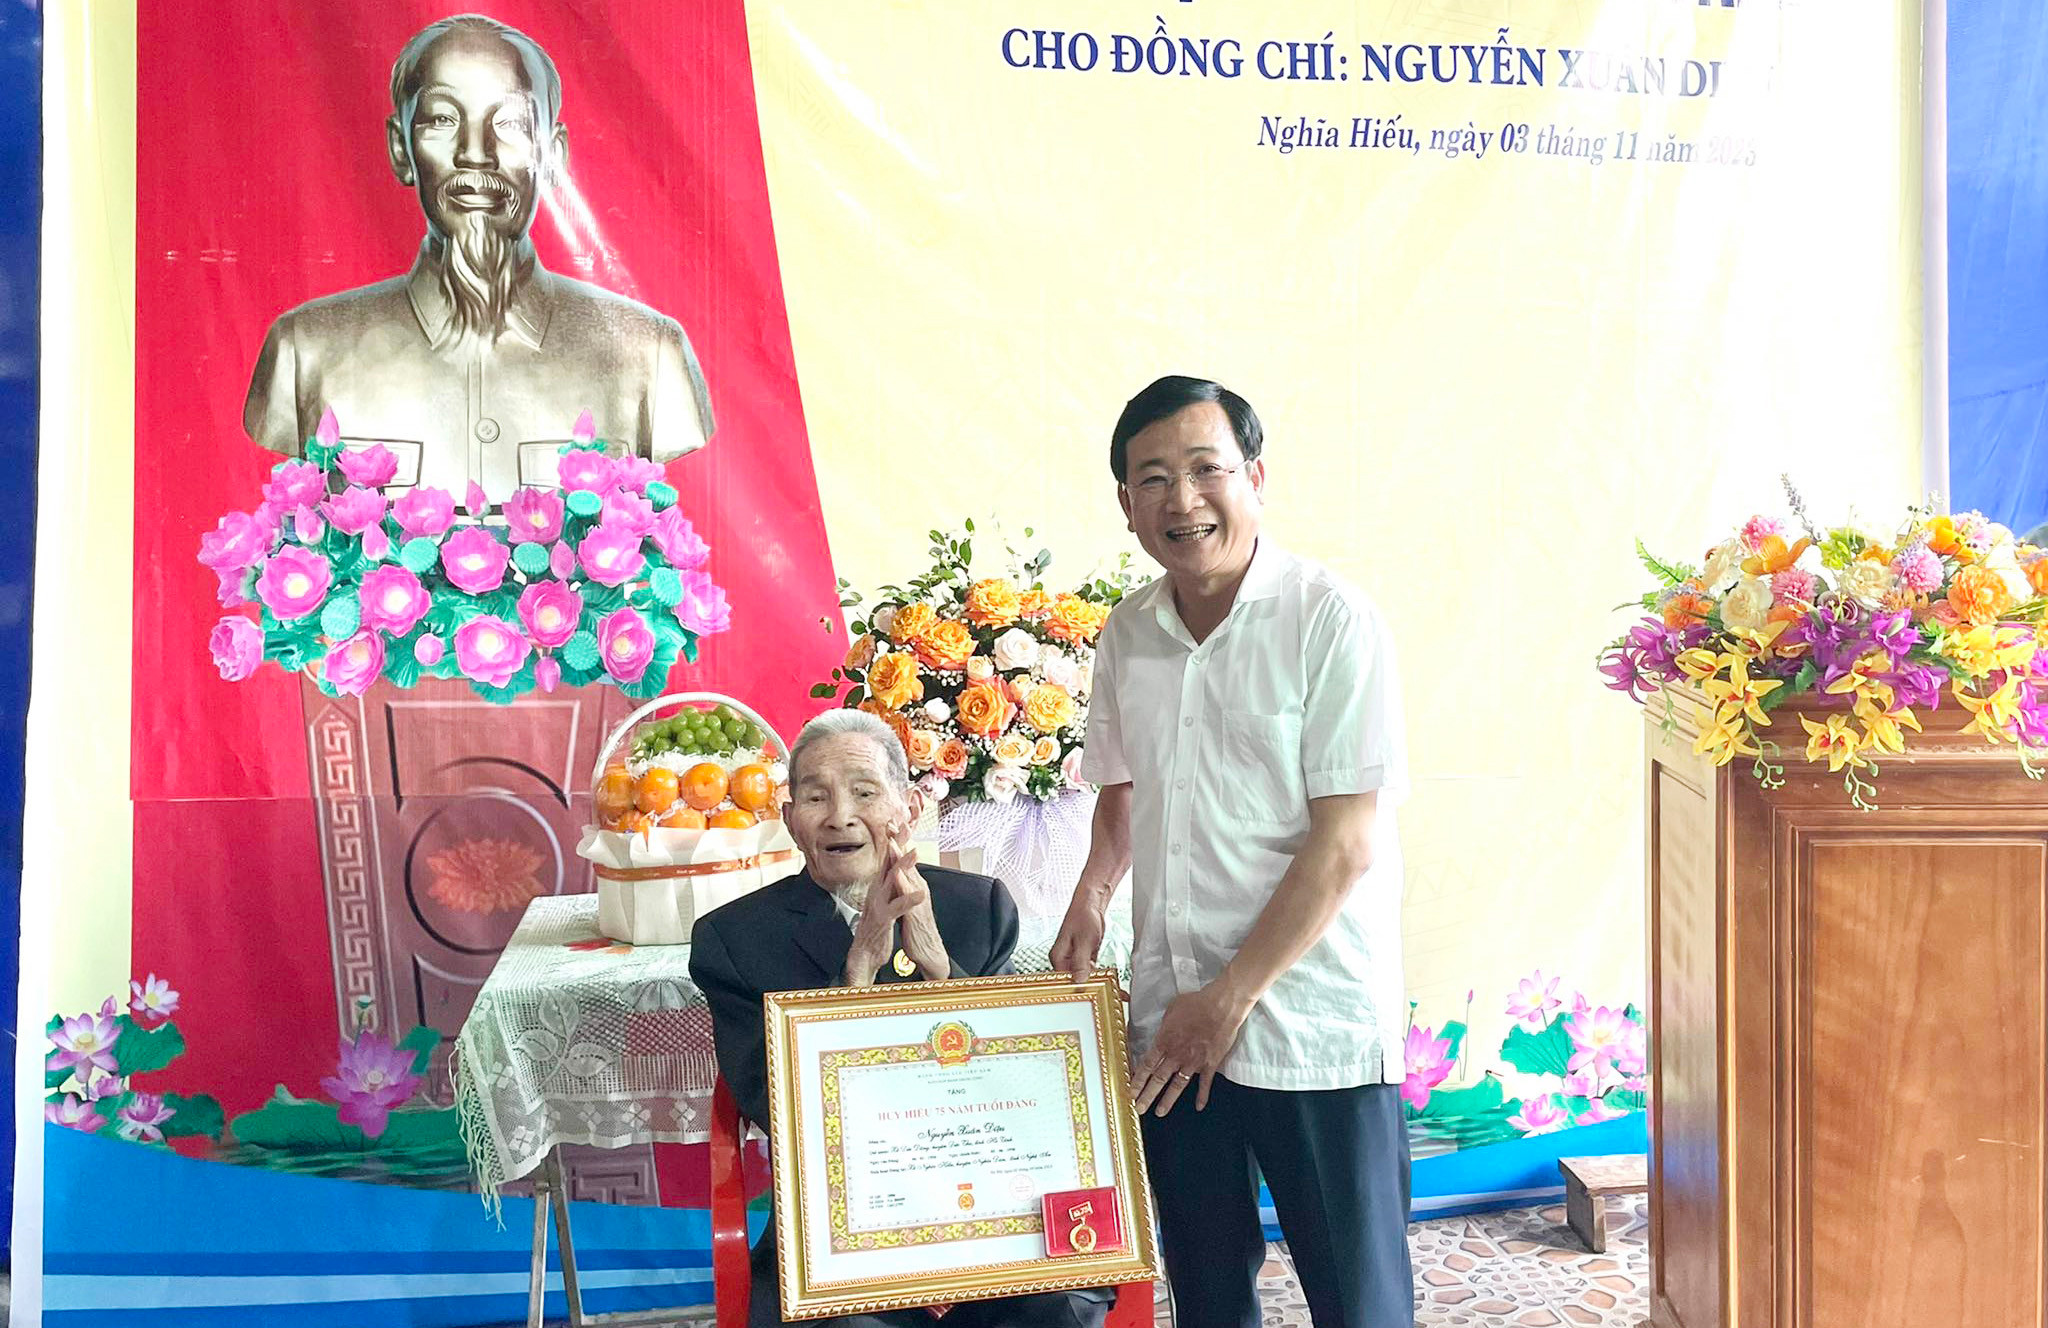 bna-Lãnh đạo huyện trao Huy hiệu 75 năm tuổi Đảng cho đồng chí Nguyễn Xuân Diệu, sinh hoạt tại chi bộ xóm Lê Lợi xã Nghĩa Hiếu..jpg